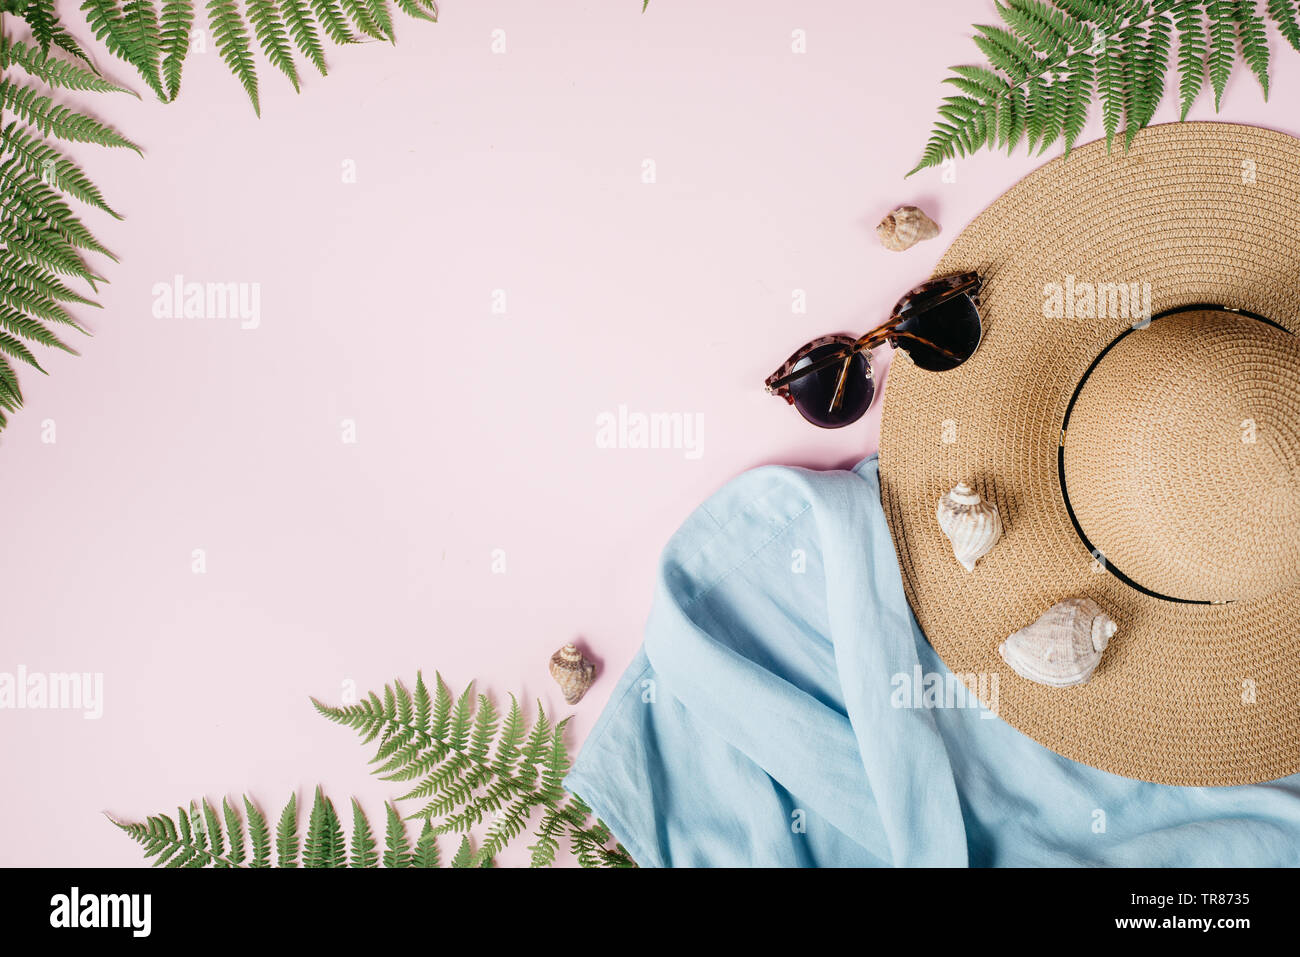 @Summer mode féminine composition avec un chemisier, chapeau, lunettes, fougère, seashell sur fond rose. Mise à plat, vue du dessus des vêtements minimalistes collage. Tr Banque D'Images